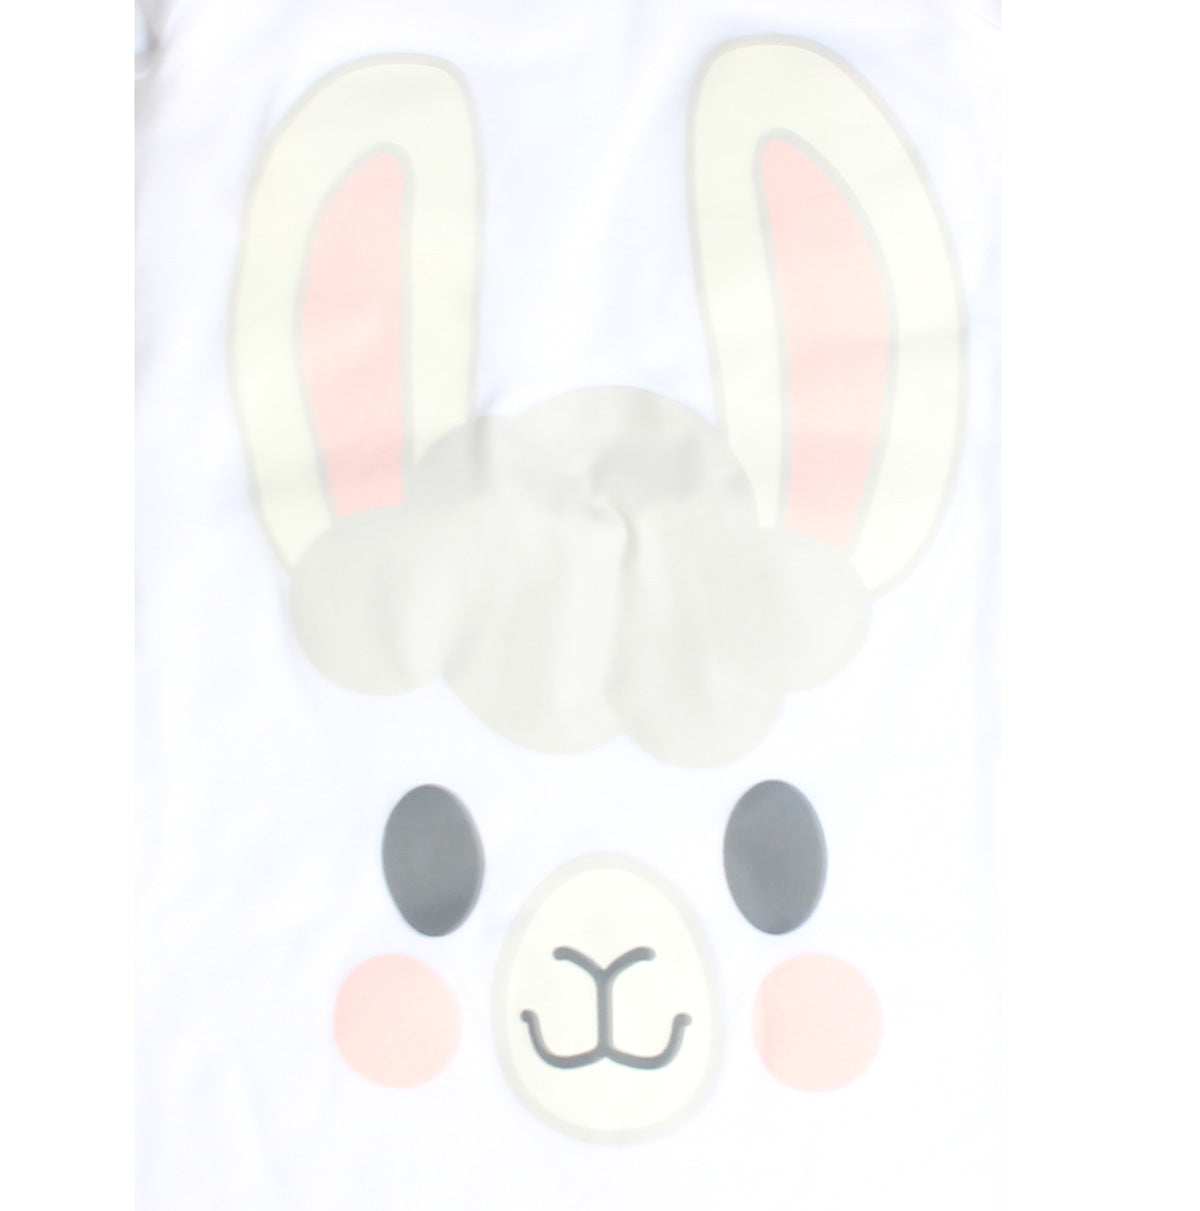 Lil' Llama Baby Sleep Gowns, 3 Designs, 0-6 MOS.